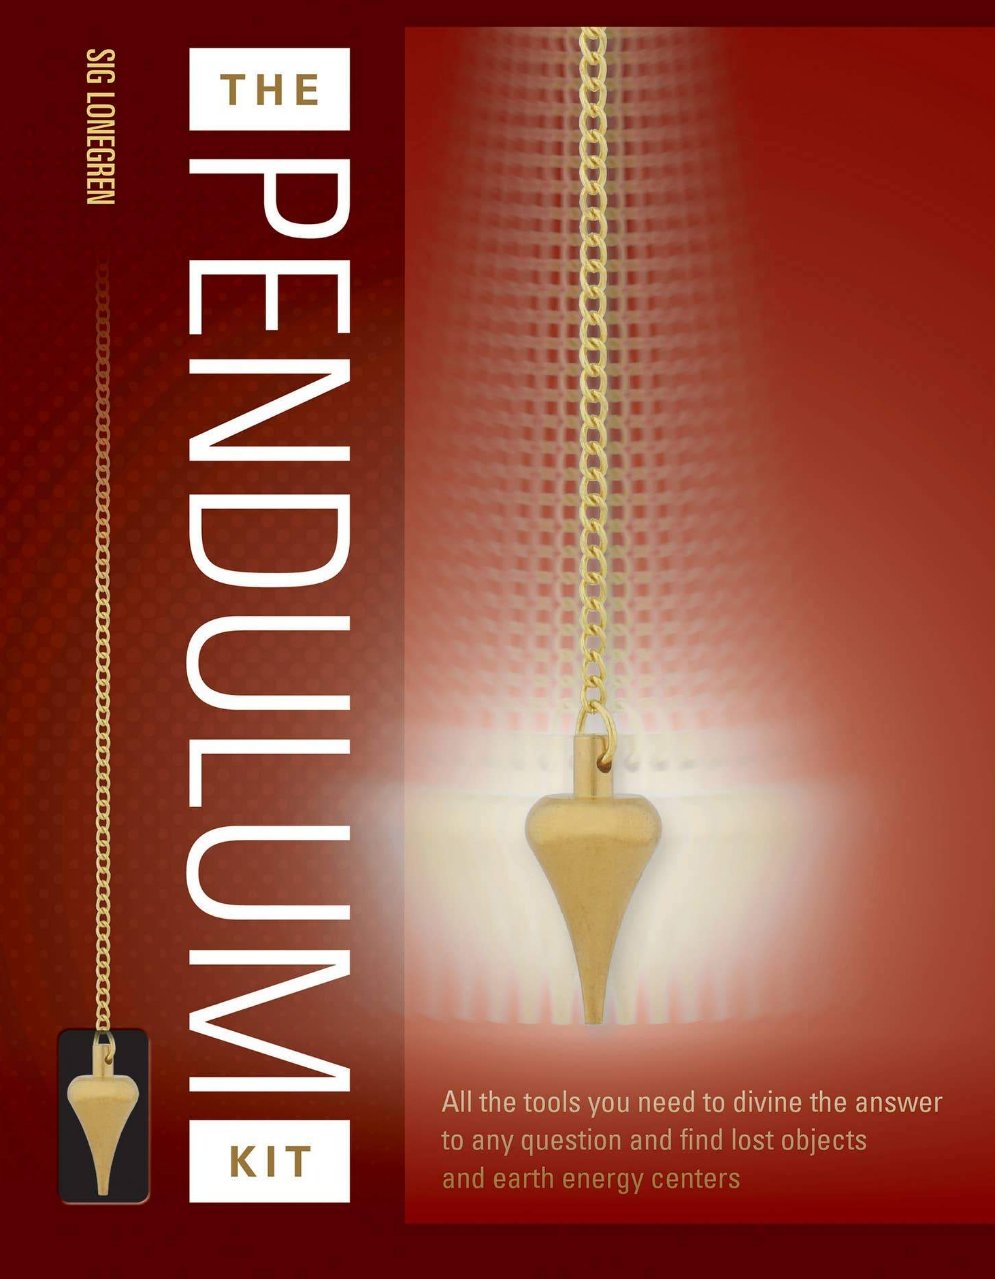 The Pendulum Kit